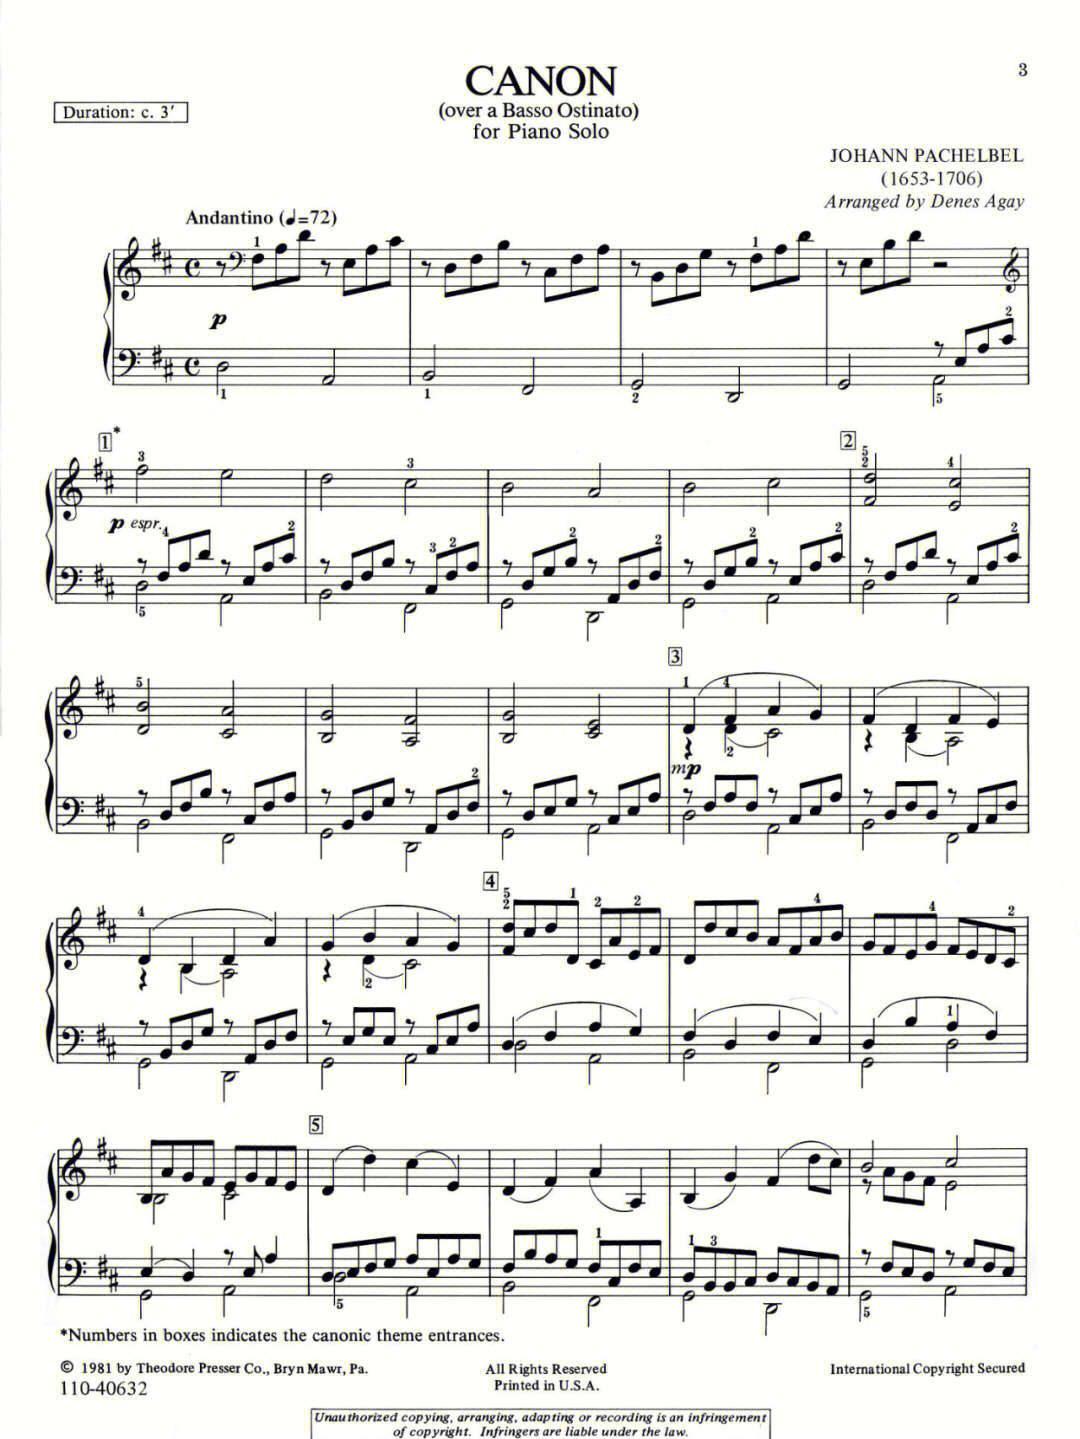 卡农大提琴谱 五线谱图片